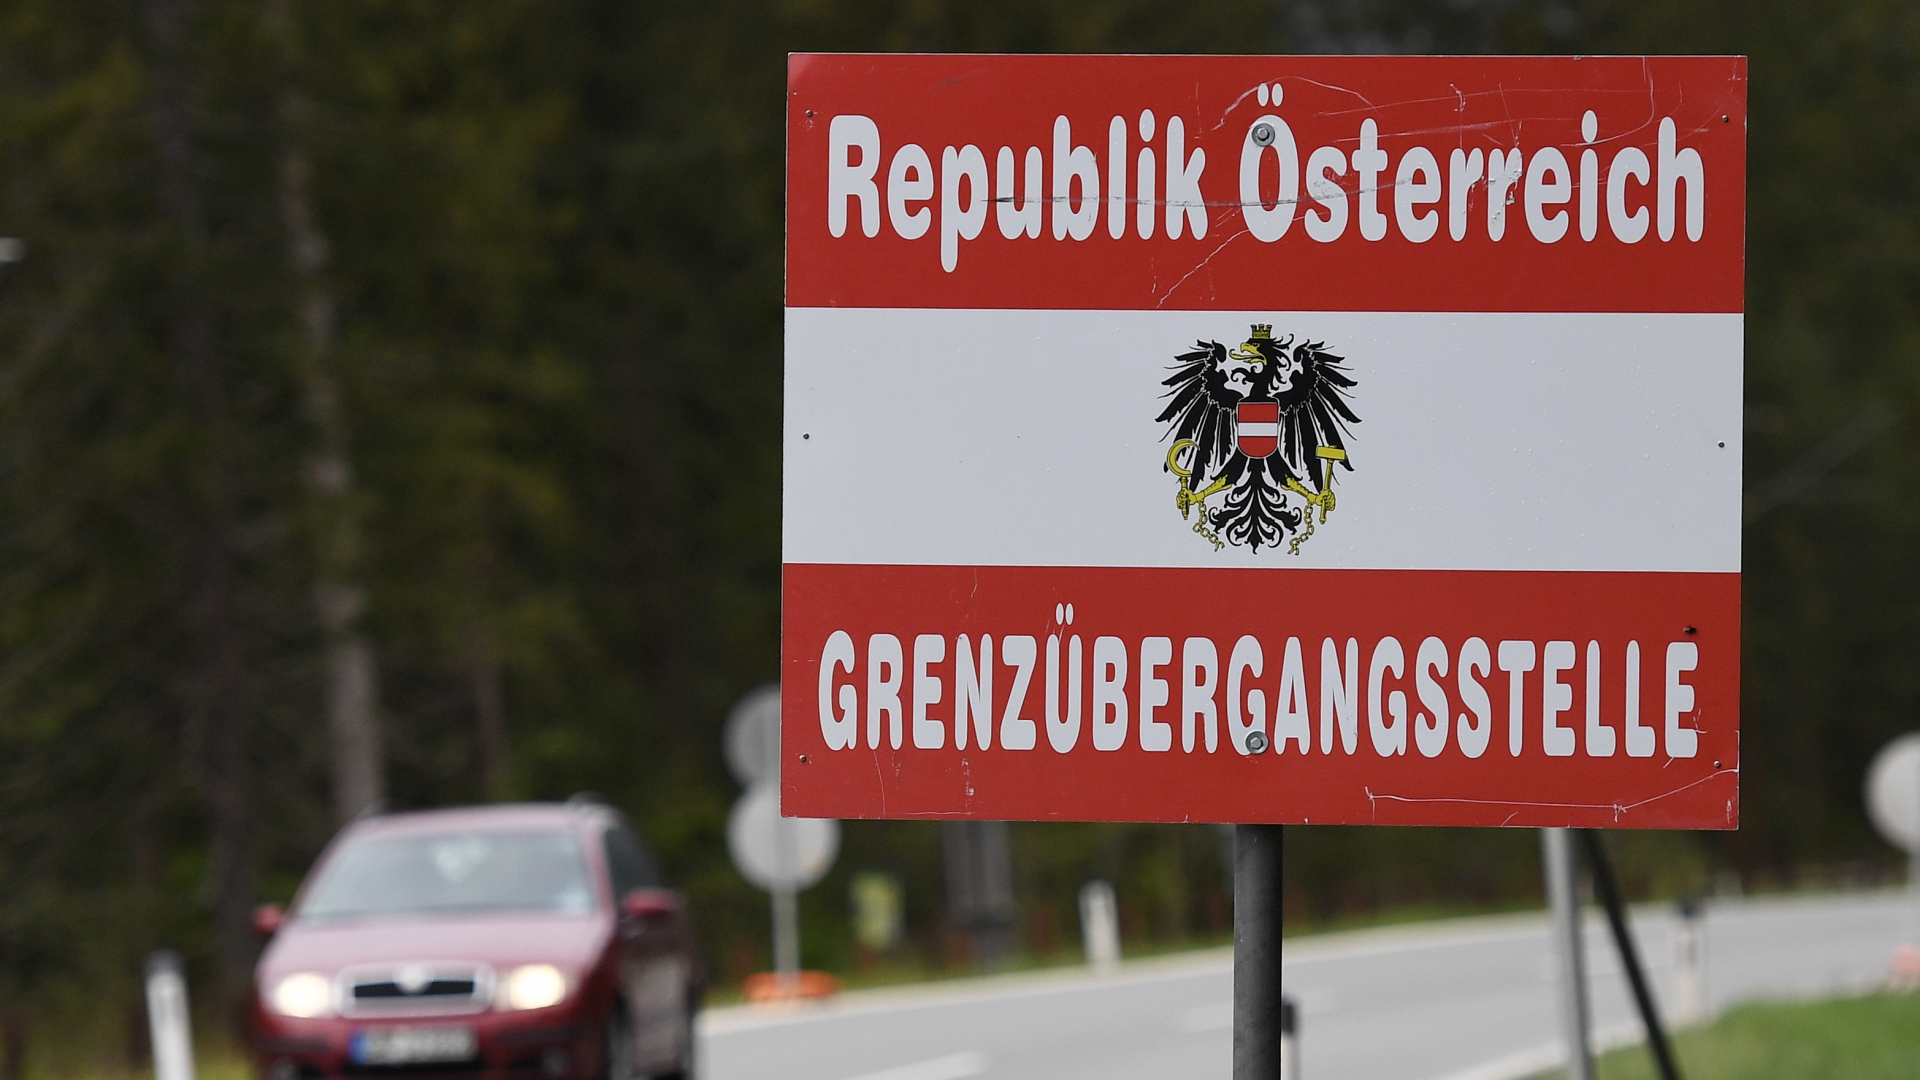 Grenzübergangsstelle in Österreich | dpa